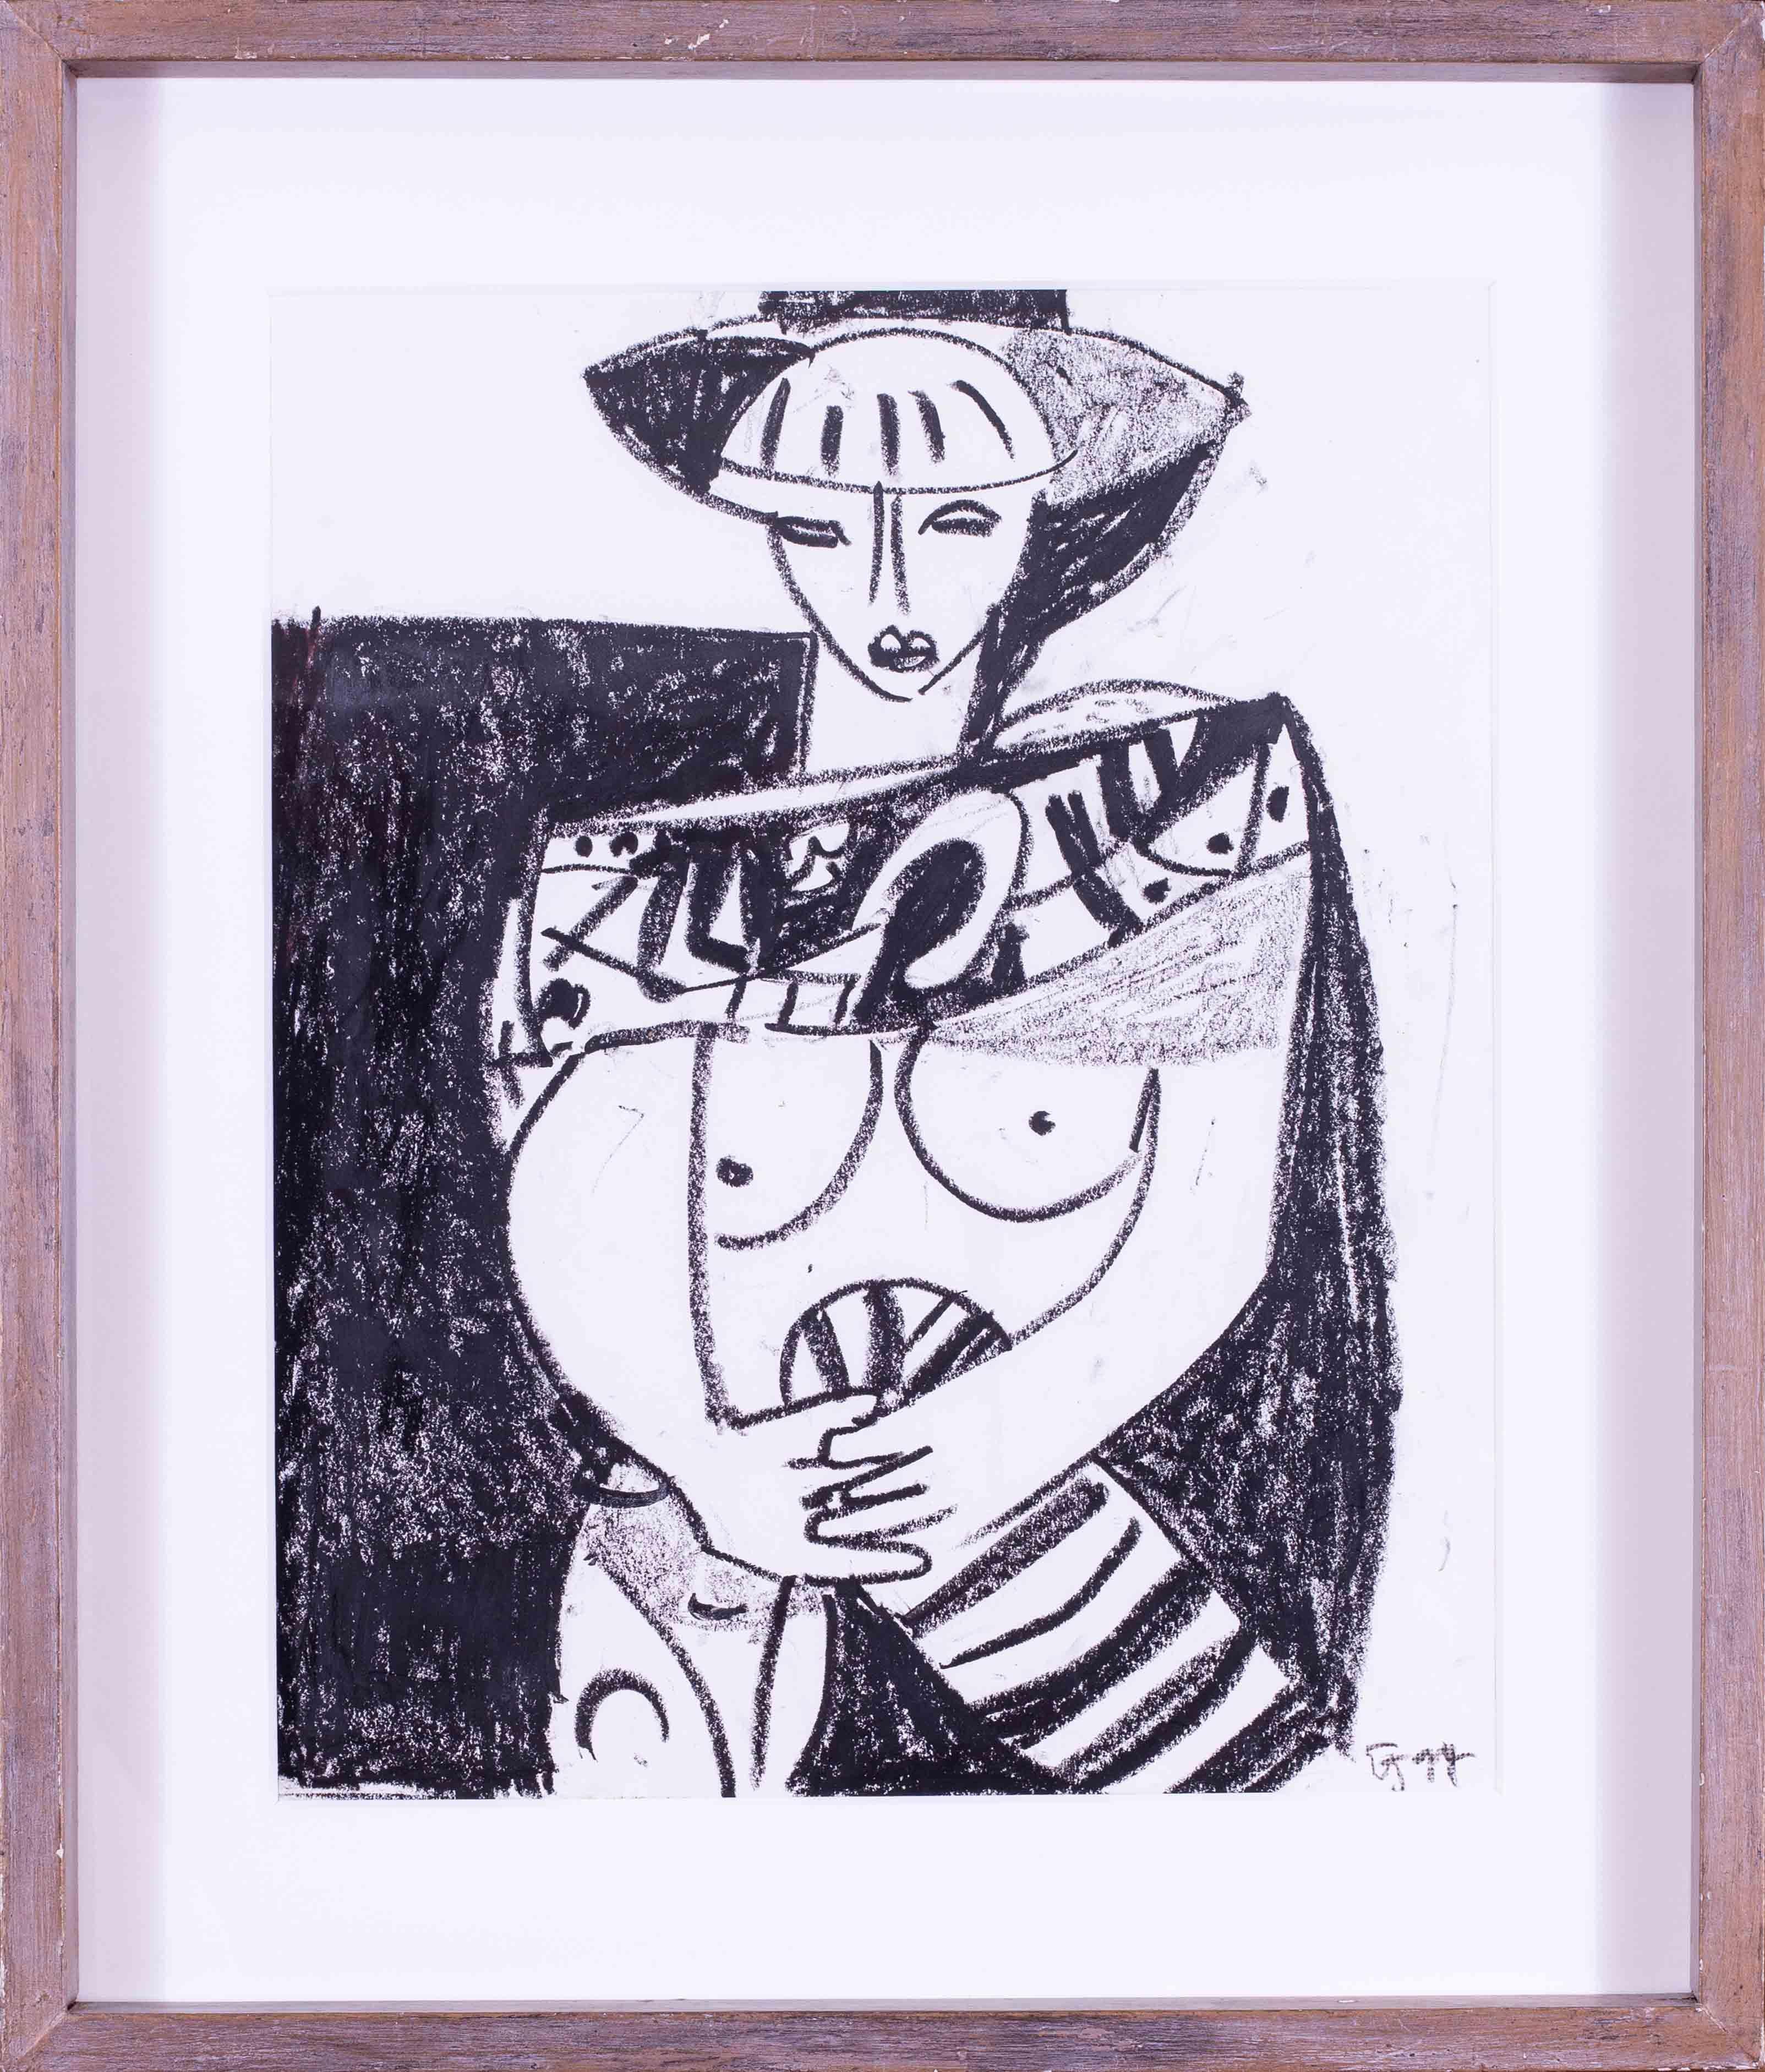 Une œuvre figurative en noir et blanc vraiment accrocheuse de l'artiste britannique moderne Ewart Johns (1923 - 2013) "Un hommage à Picasso".

Ewart Johns (britannique, 1923 - 2013)
Hommage à Picasso
Pastel sur papier
Signé avec des initiales et